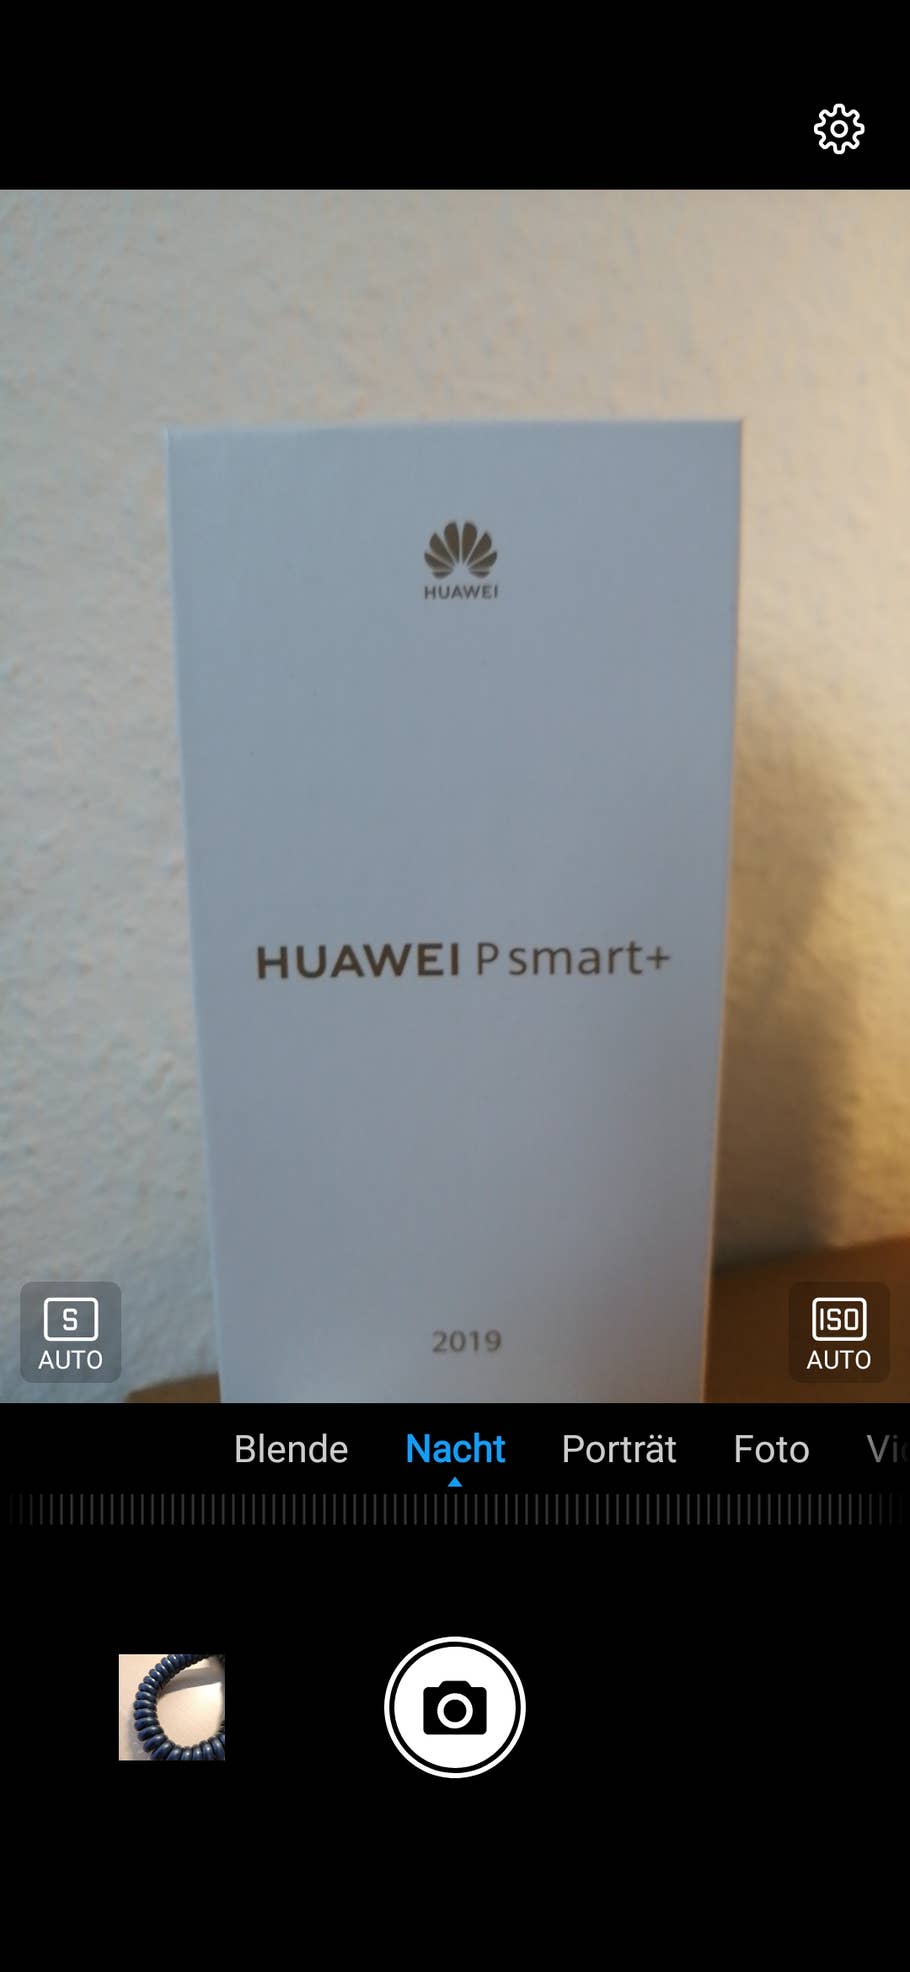 Huawei P smart+ 2019 für nachts